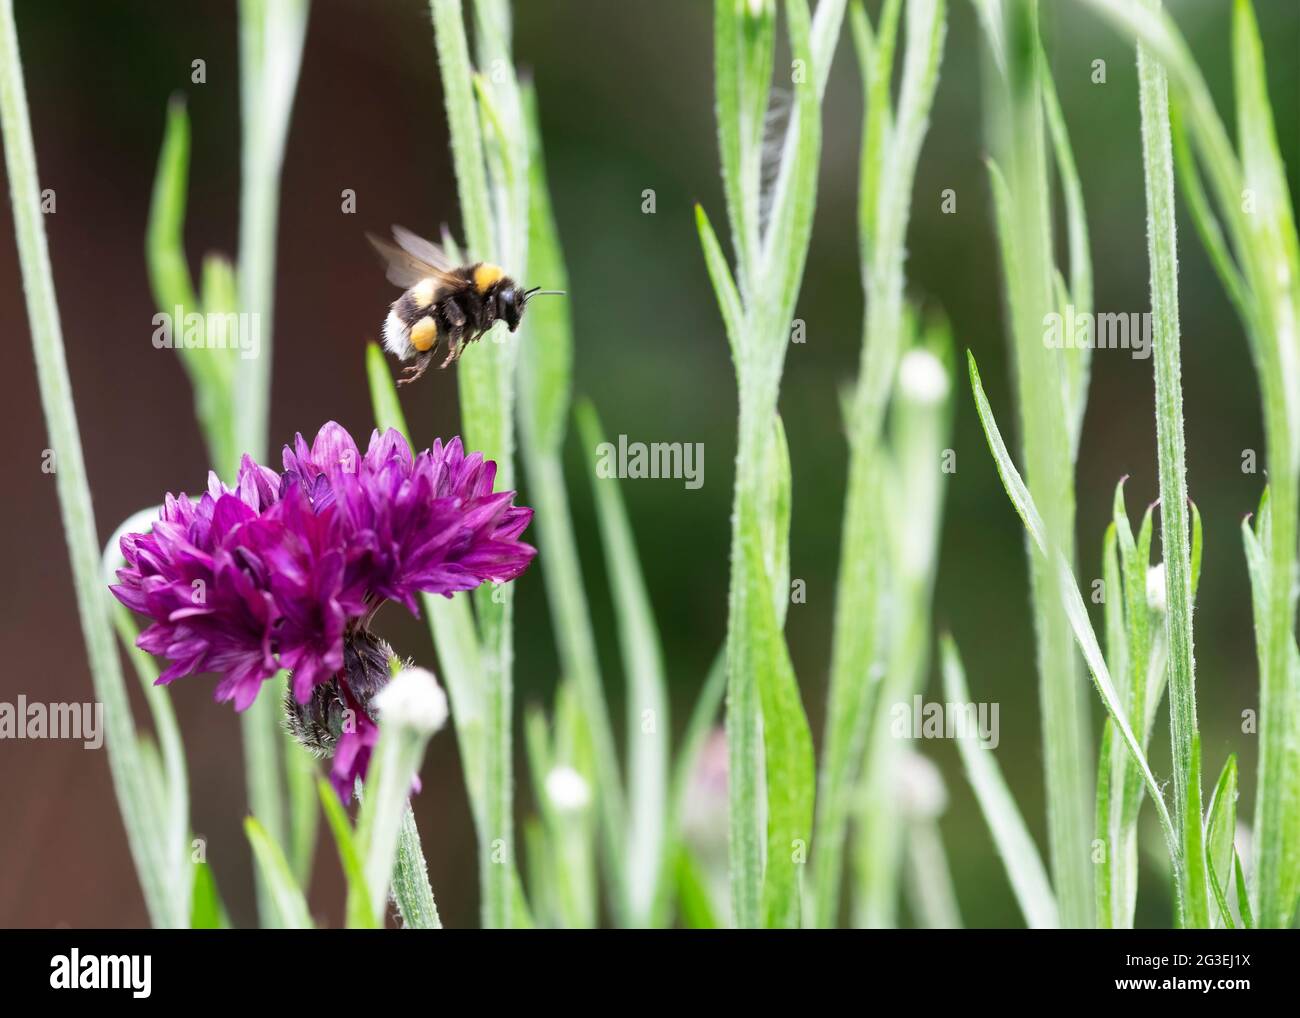 Konzept von Bienen, die aufgrund von Veränderungen in ihrer Umwelt vom Aussterben bedroht sind, zeigt eine Hummel im Flug in der Nähe einer Blume, kollektiver Fokus verschwommen Bac Stockfoto